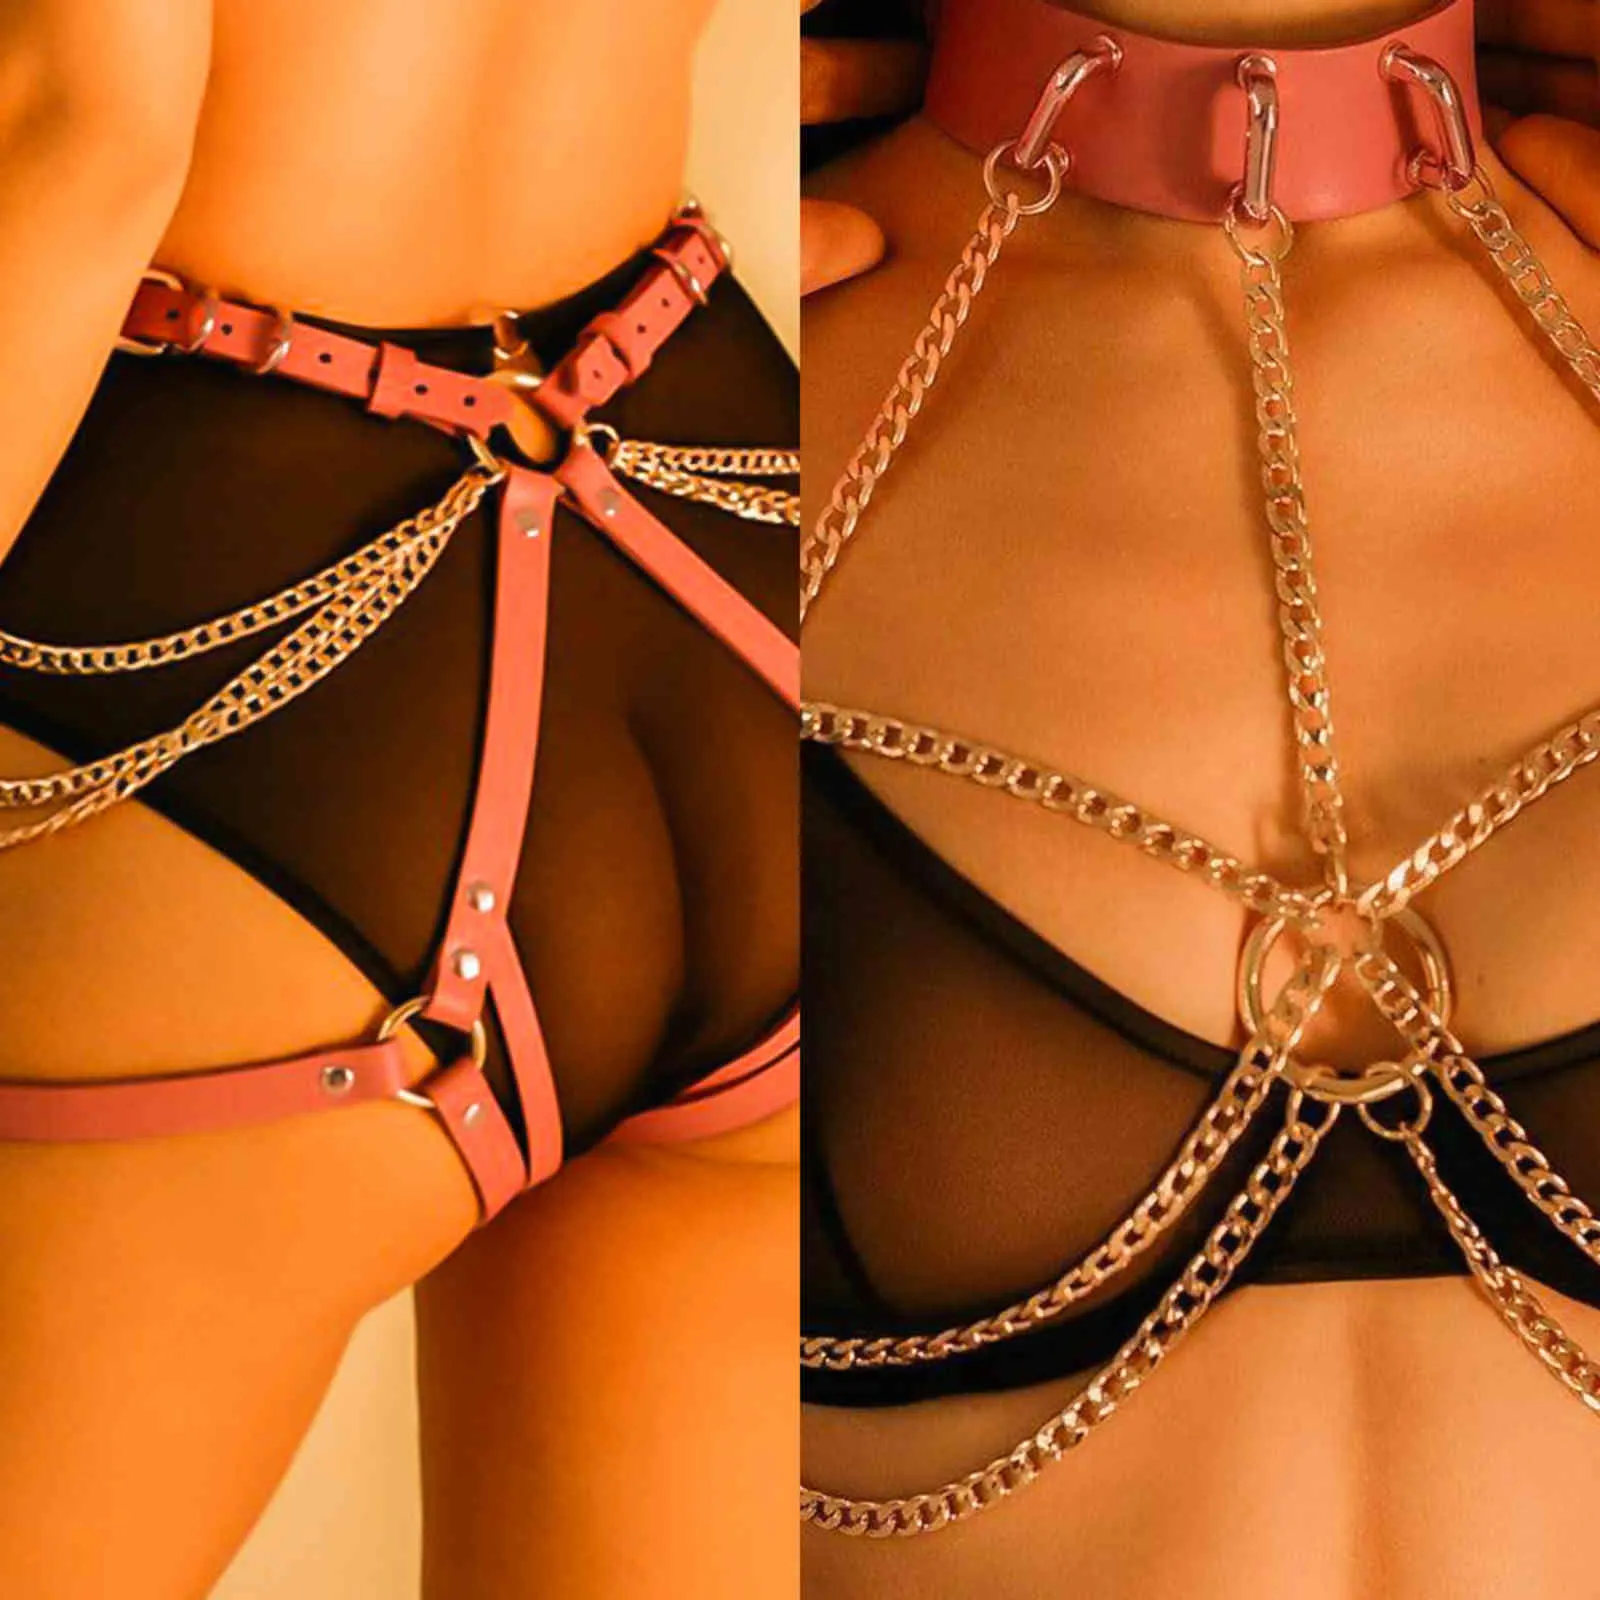 Bondage Hot SM juguetes sexuales para mujer parejas Bondage Gear erótico cadena de oro cuero fetiche cinturón Sexy Bdsm Lencería productos para adultos 1122